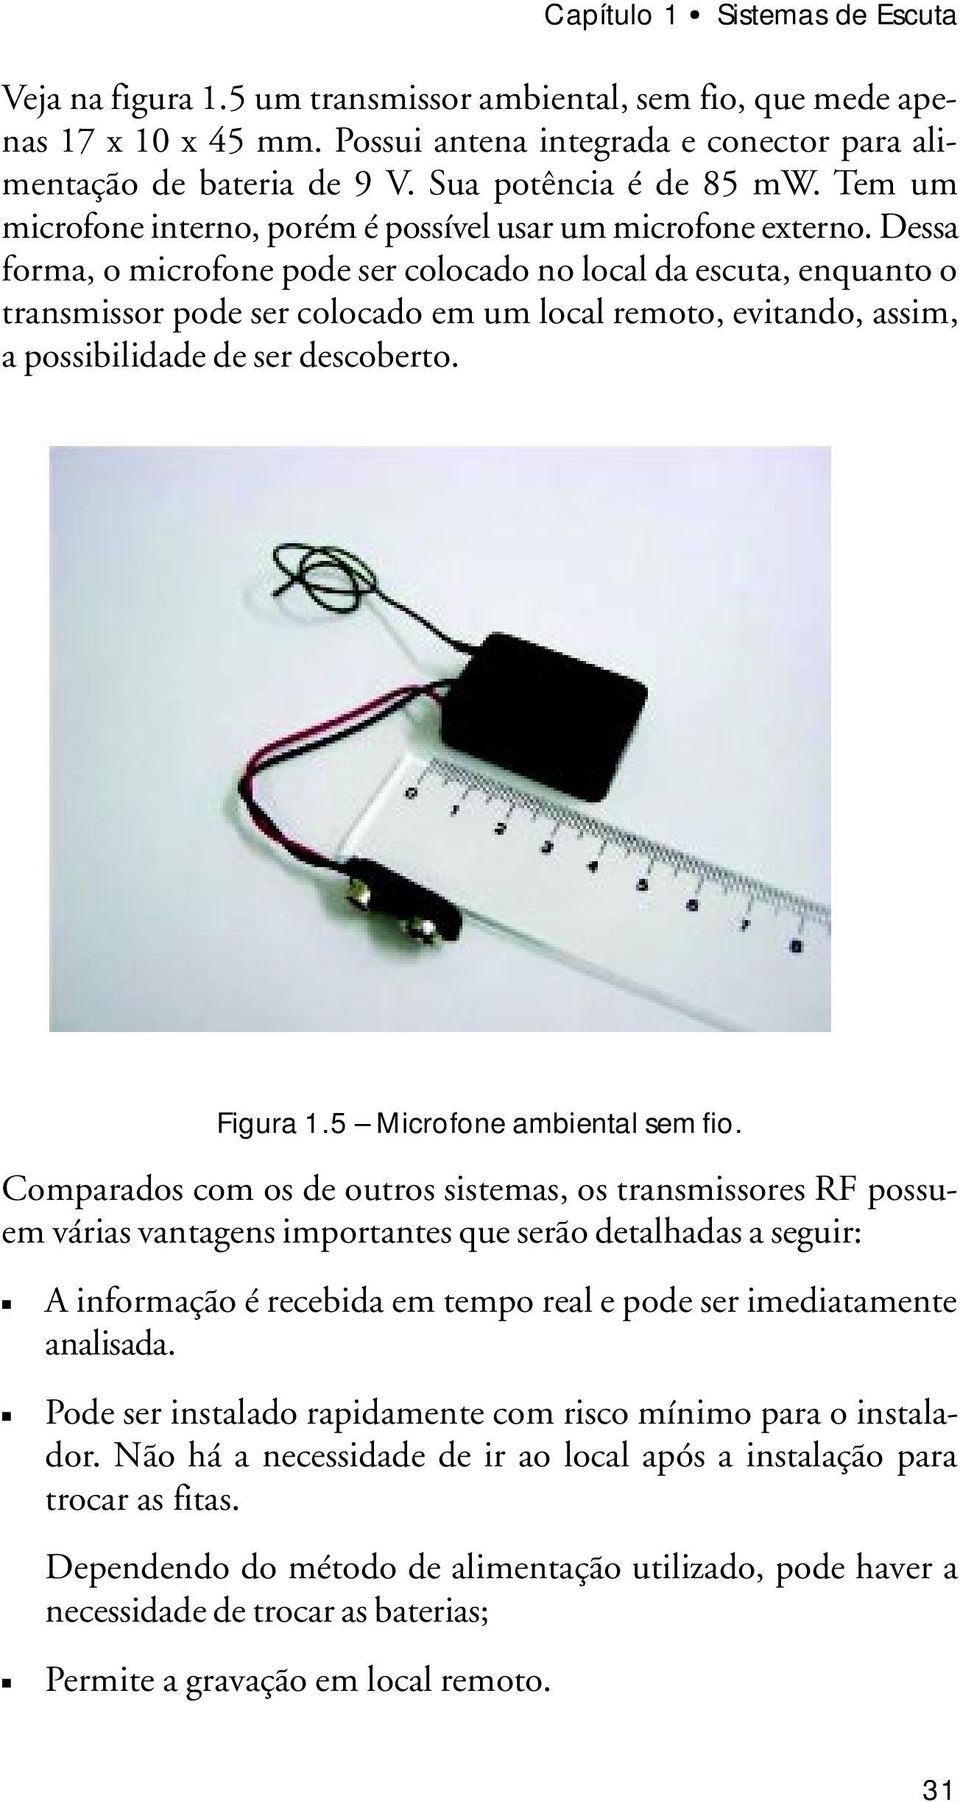 Dessa forma, o microfone pode ser colocado no local da escuta, enquanto o transmissor pode ser colocado em um local remoto, evitando, assim, a possibilidade de ser descoberto. Figura 1.